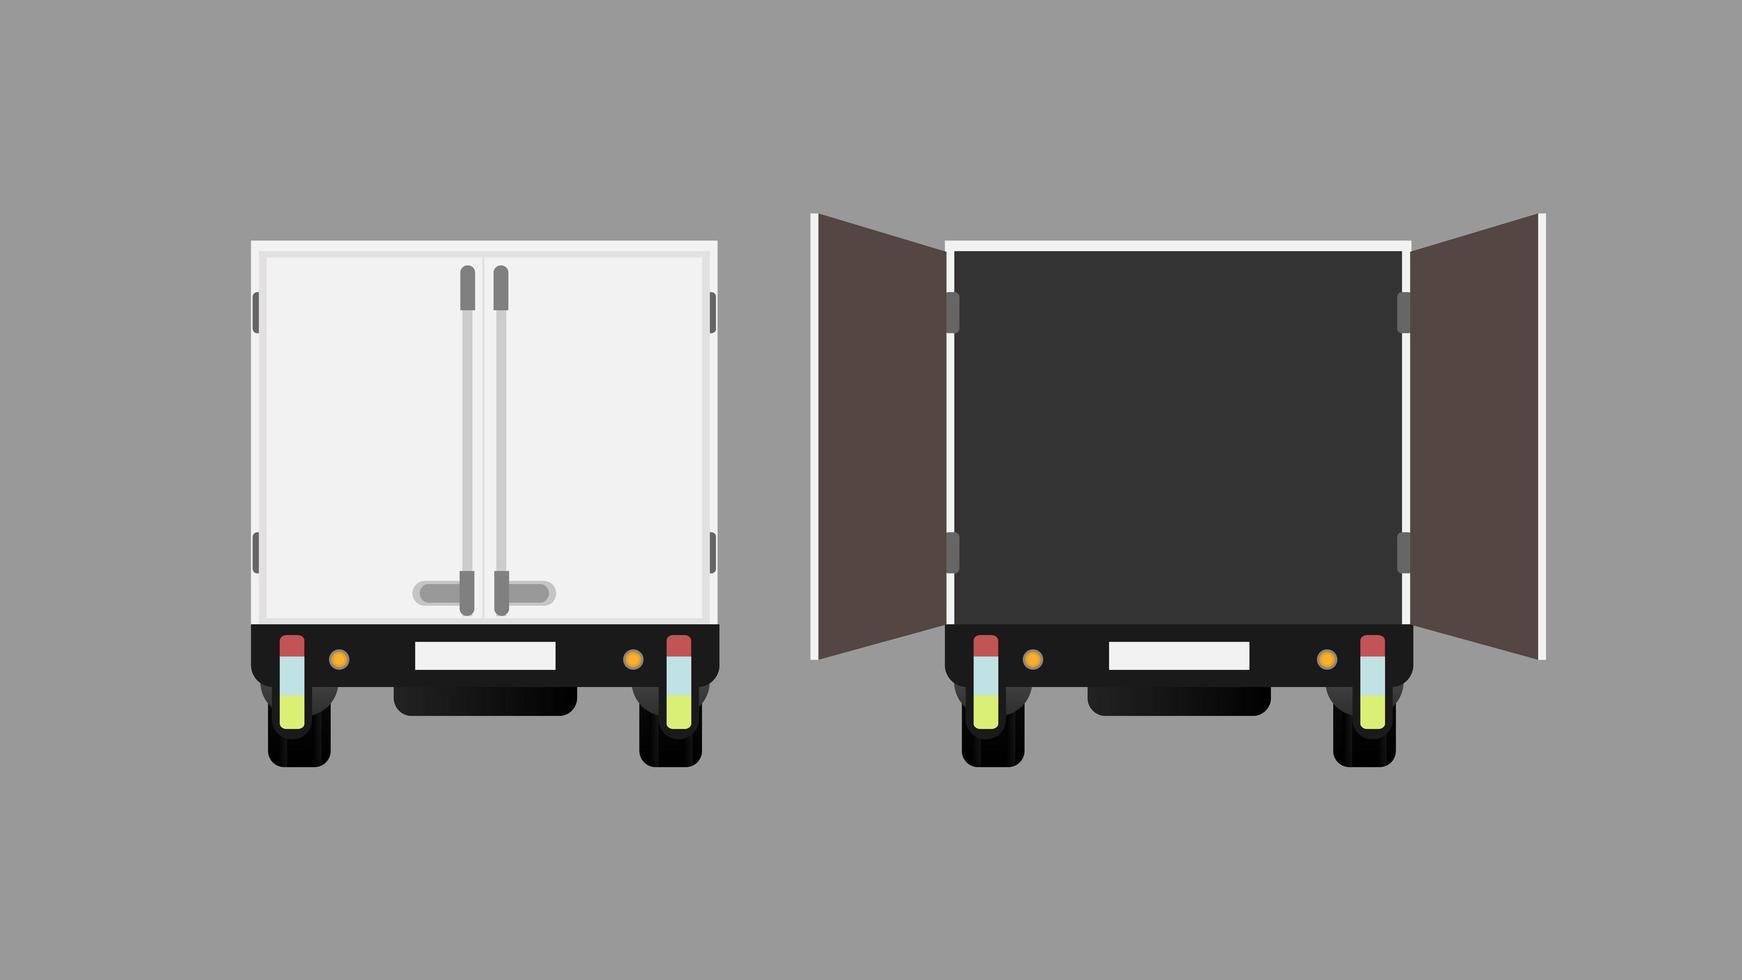 LKW-Rückansicht. offenen LKW. Element für die Gestaltung zum Thema Transport und Lieferung von Waren. isoliert. Vektor. vektor